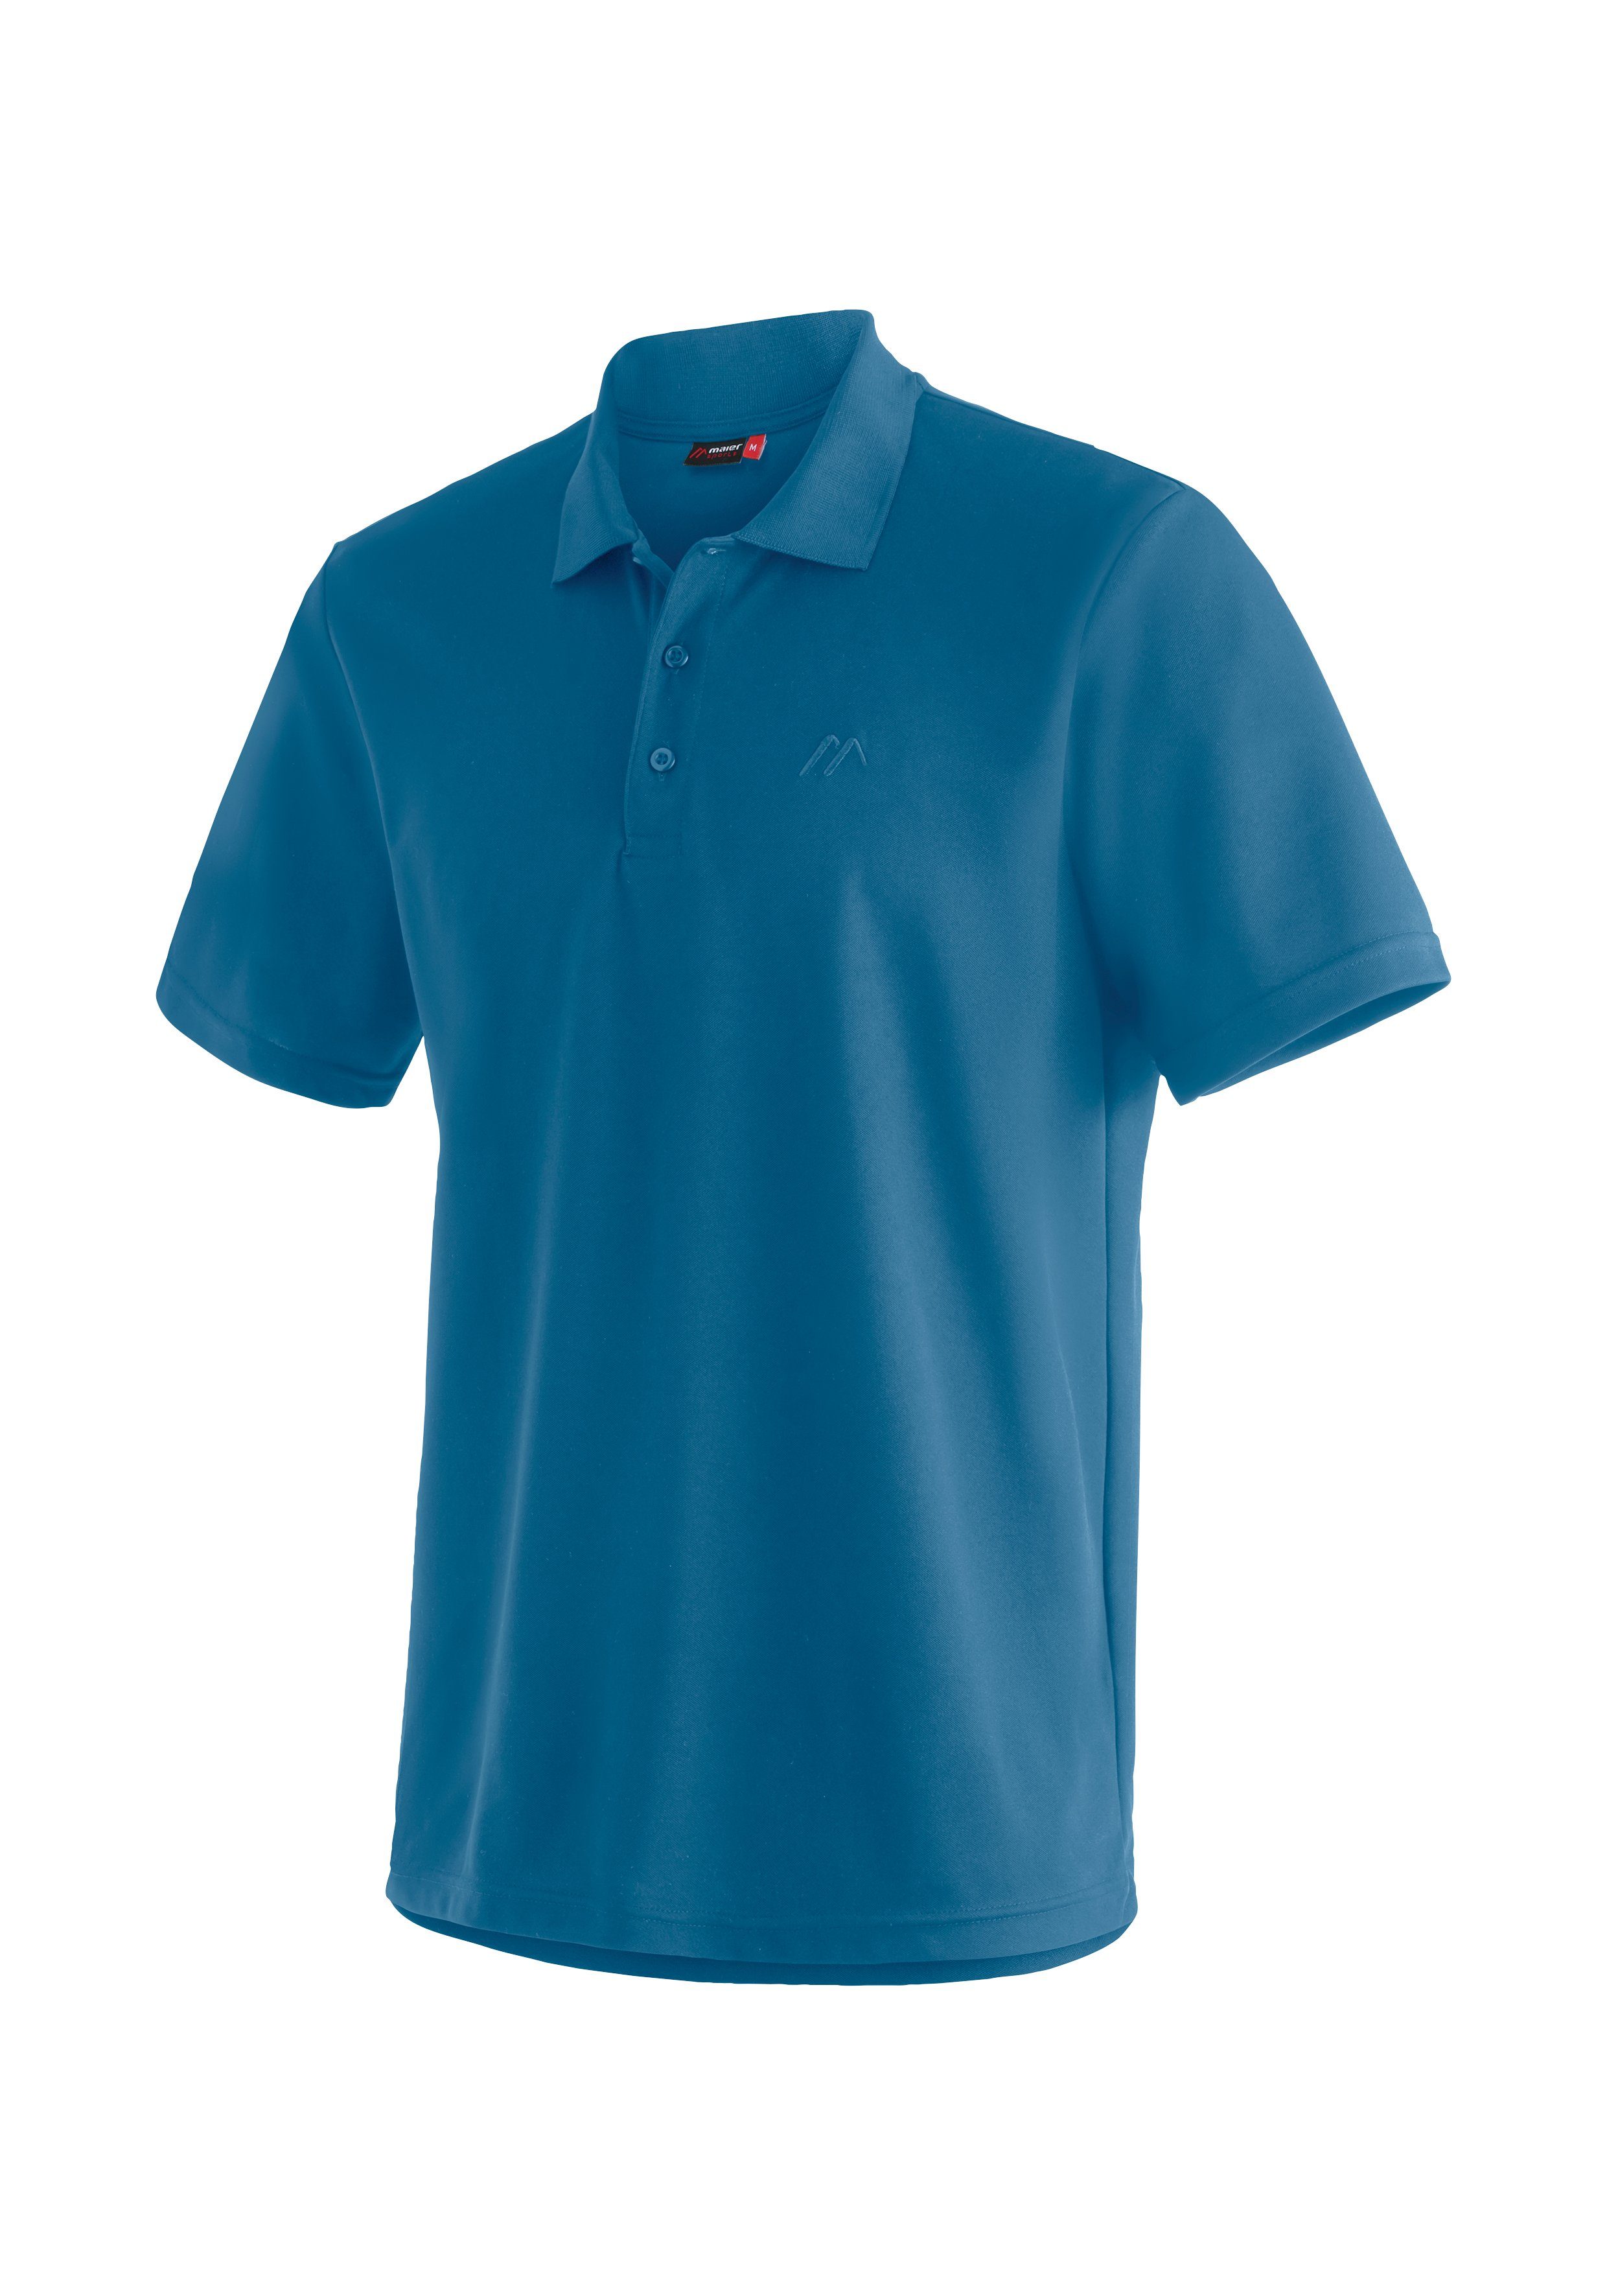 und Wandershirt, Polo-Shirt bequemes Funktionsshirt Freizeit mid für Herren mostly Sports blue Maier Wandern Ulrich